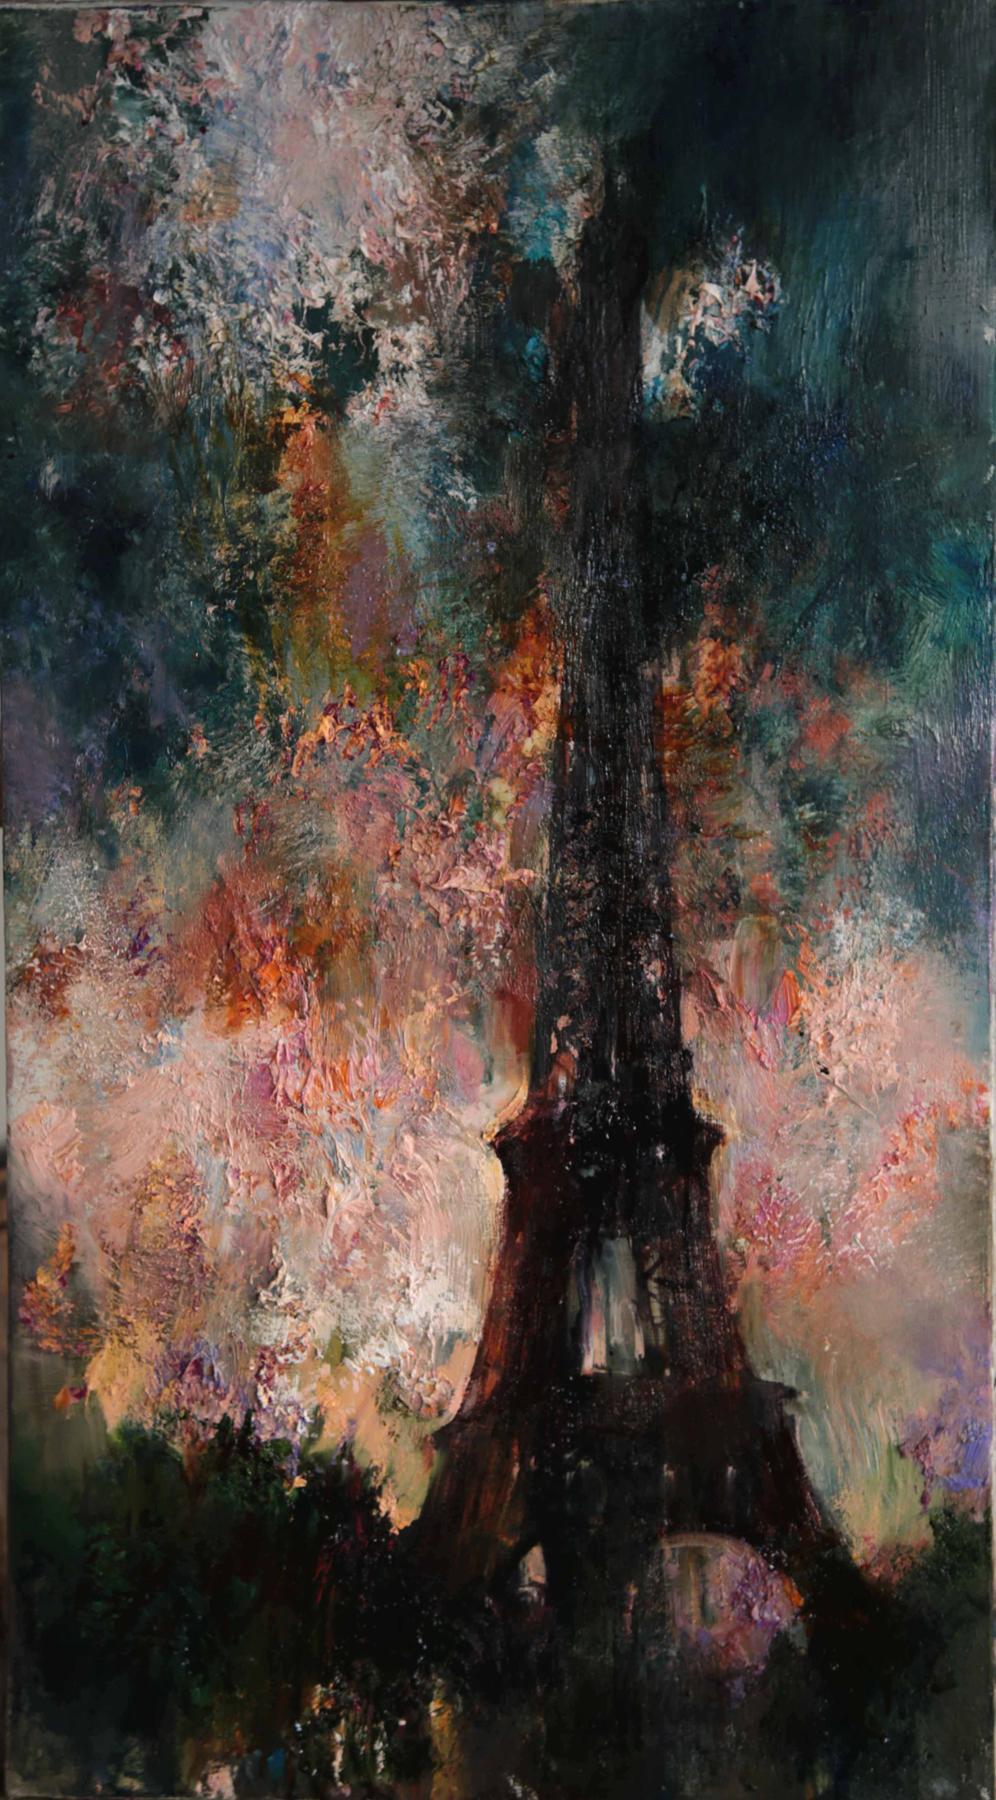 Tour Eiffel. Original modern art painting